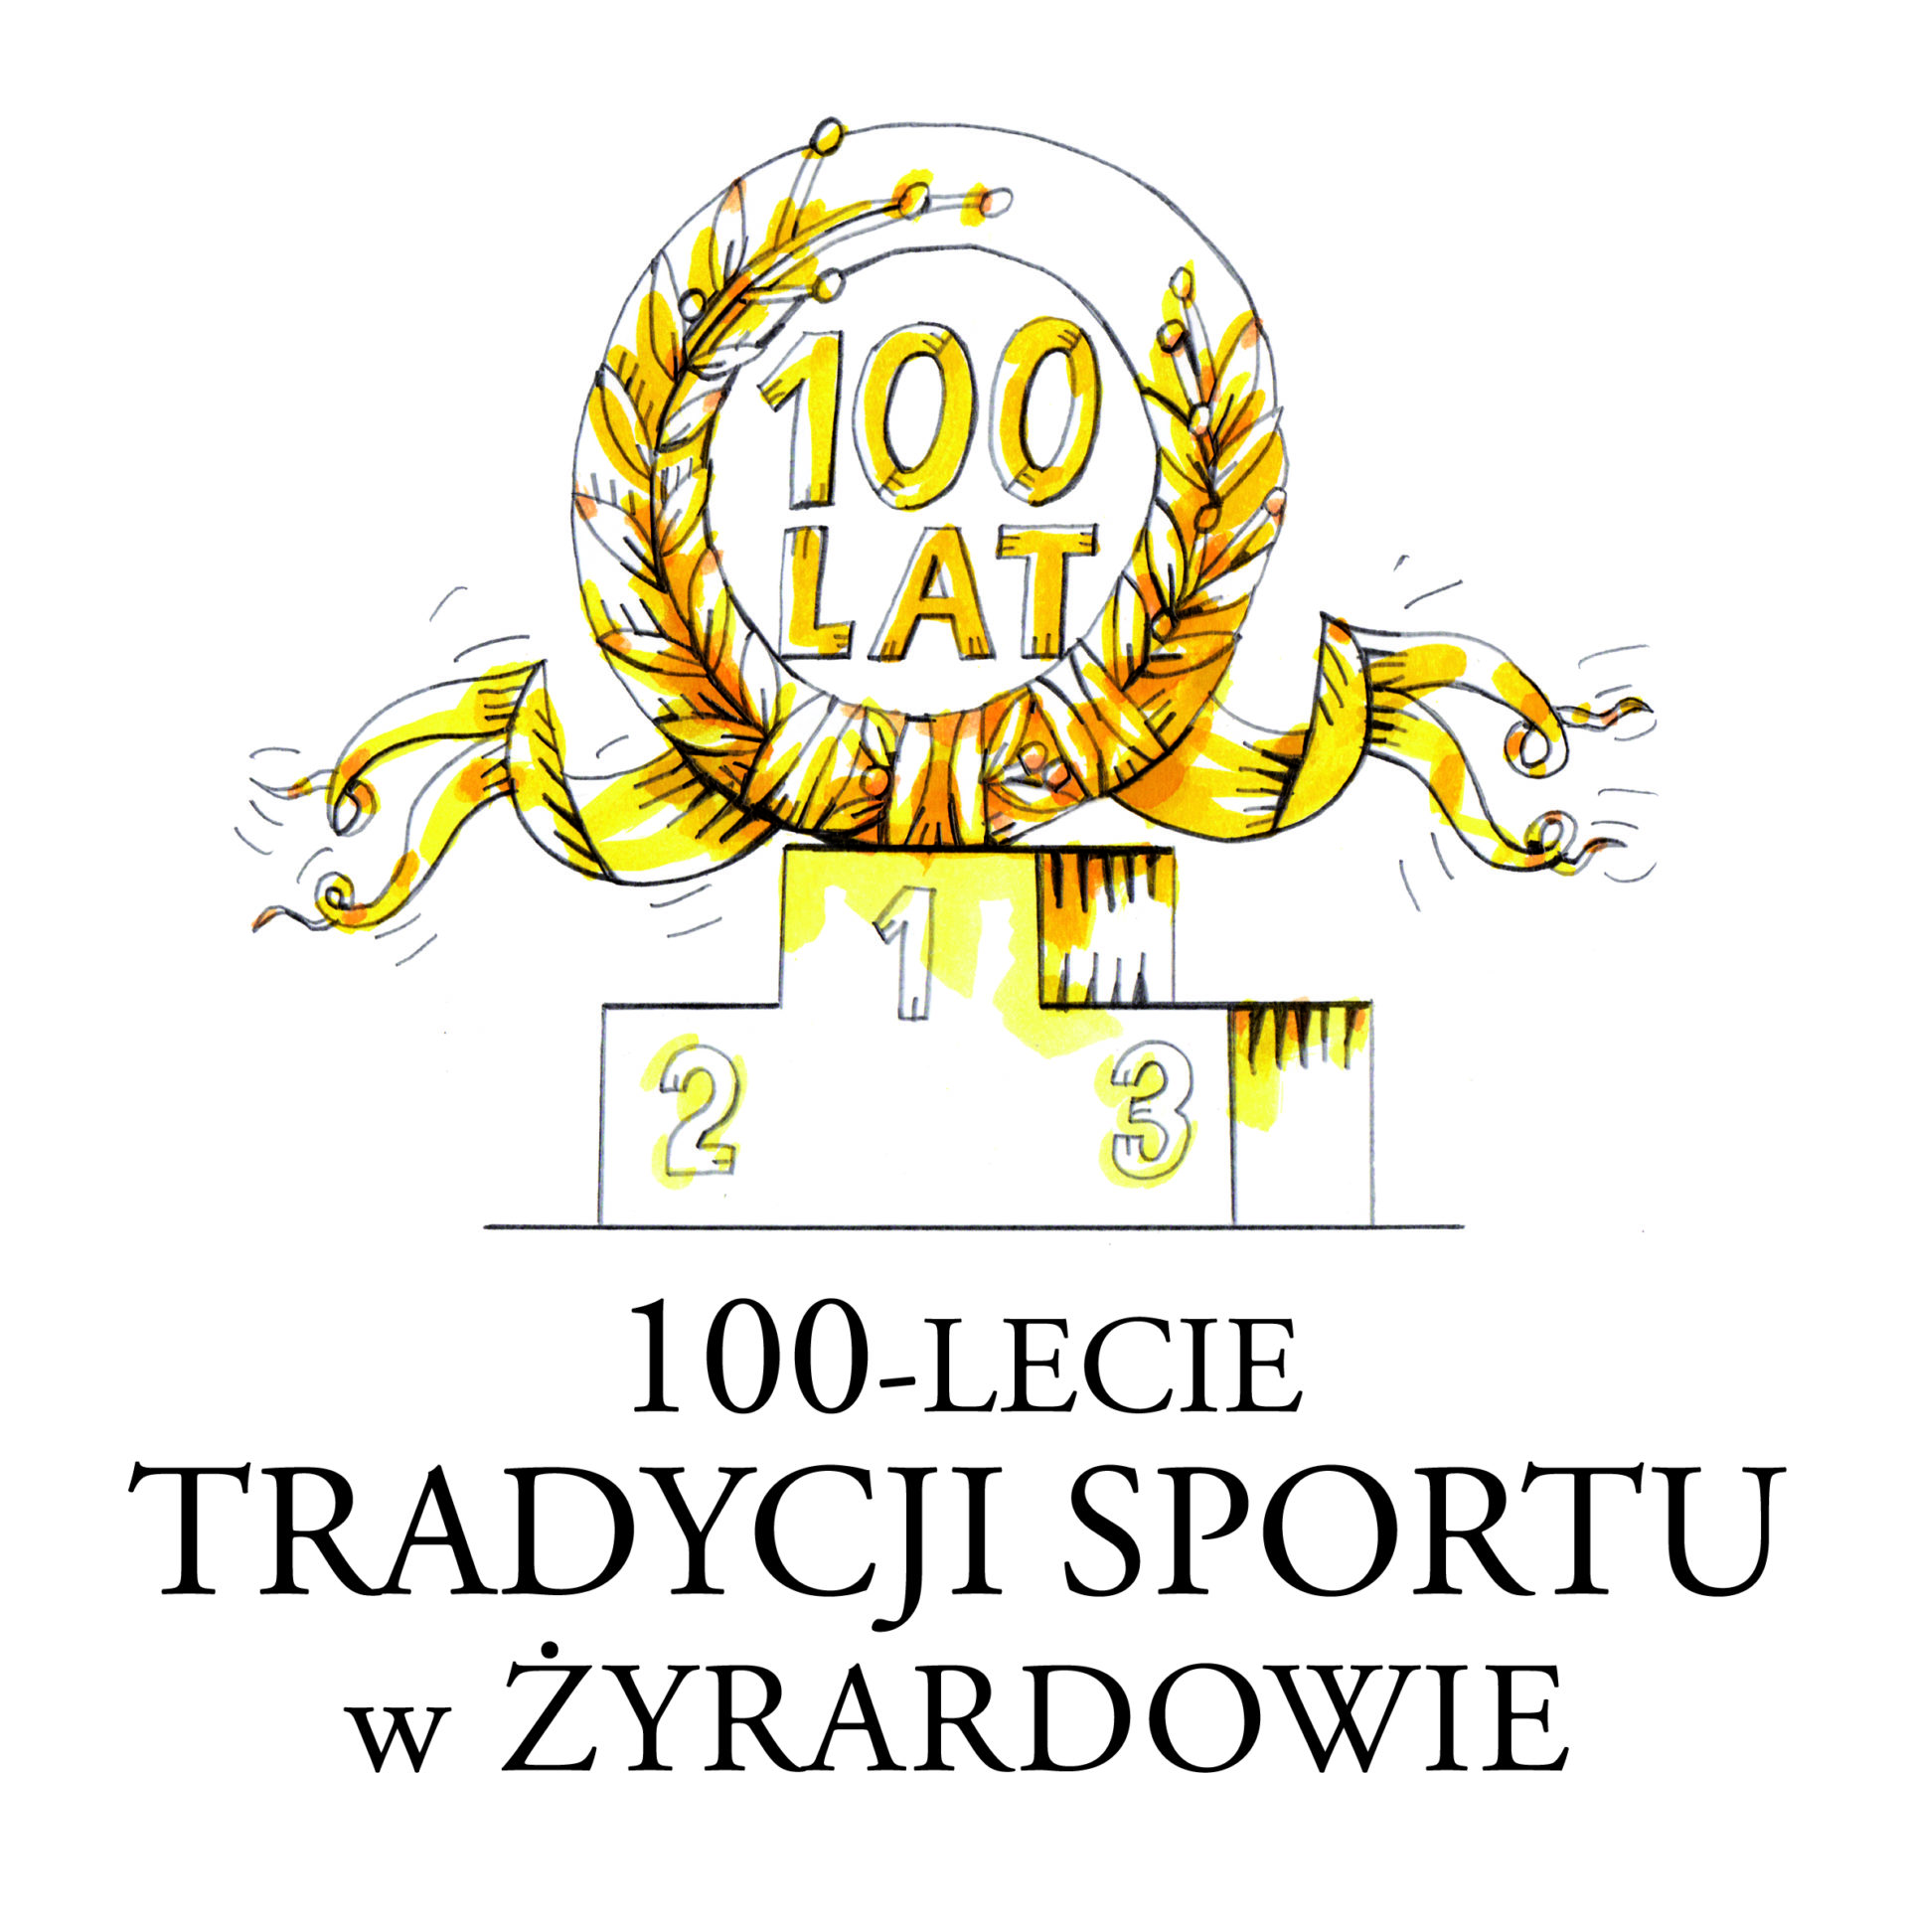 Jubileuszowe logo autorstwa Zbigniewa Kołaczka